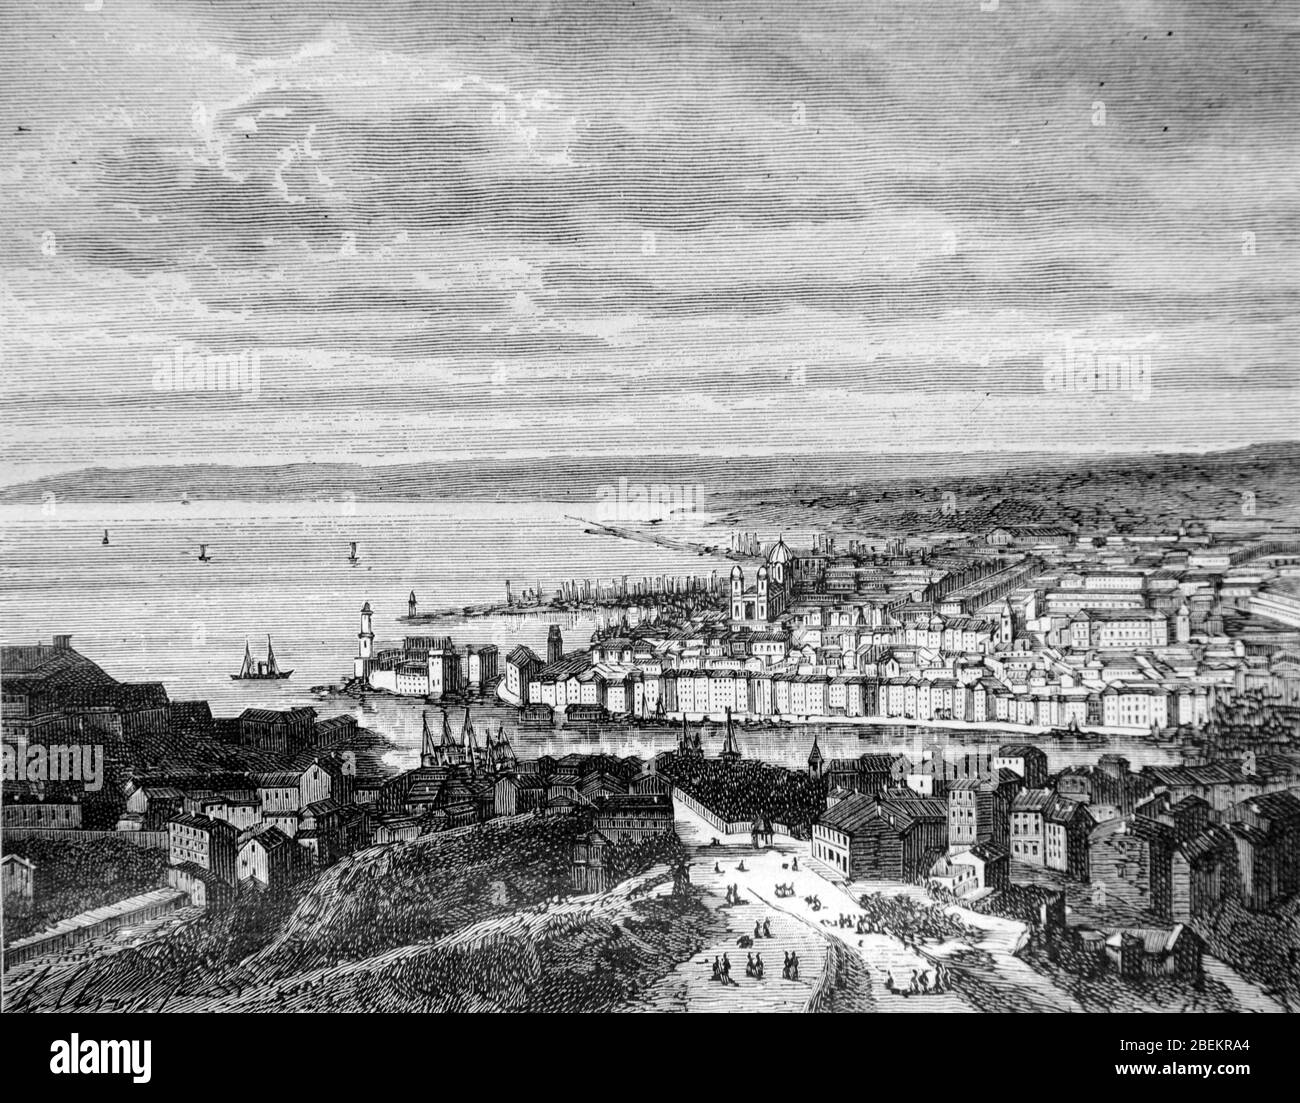 Blick auf den Alten Hafen oder Vieux Port Marseille Frankreich Ende des 19. Jahrhunderts. Weinbau oder alte Illustration oder Gravur 1887 Stockfoto